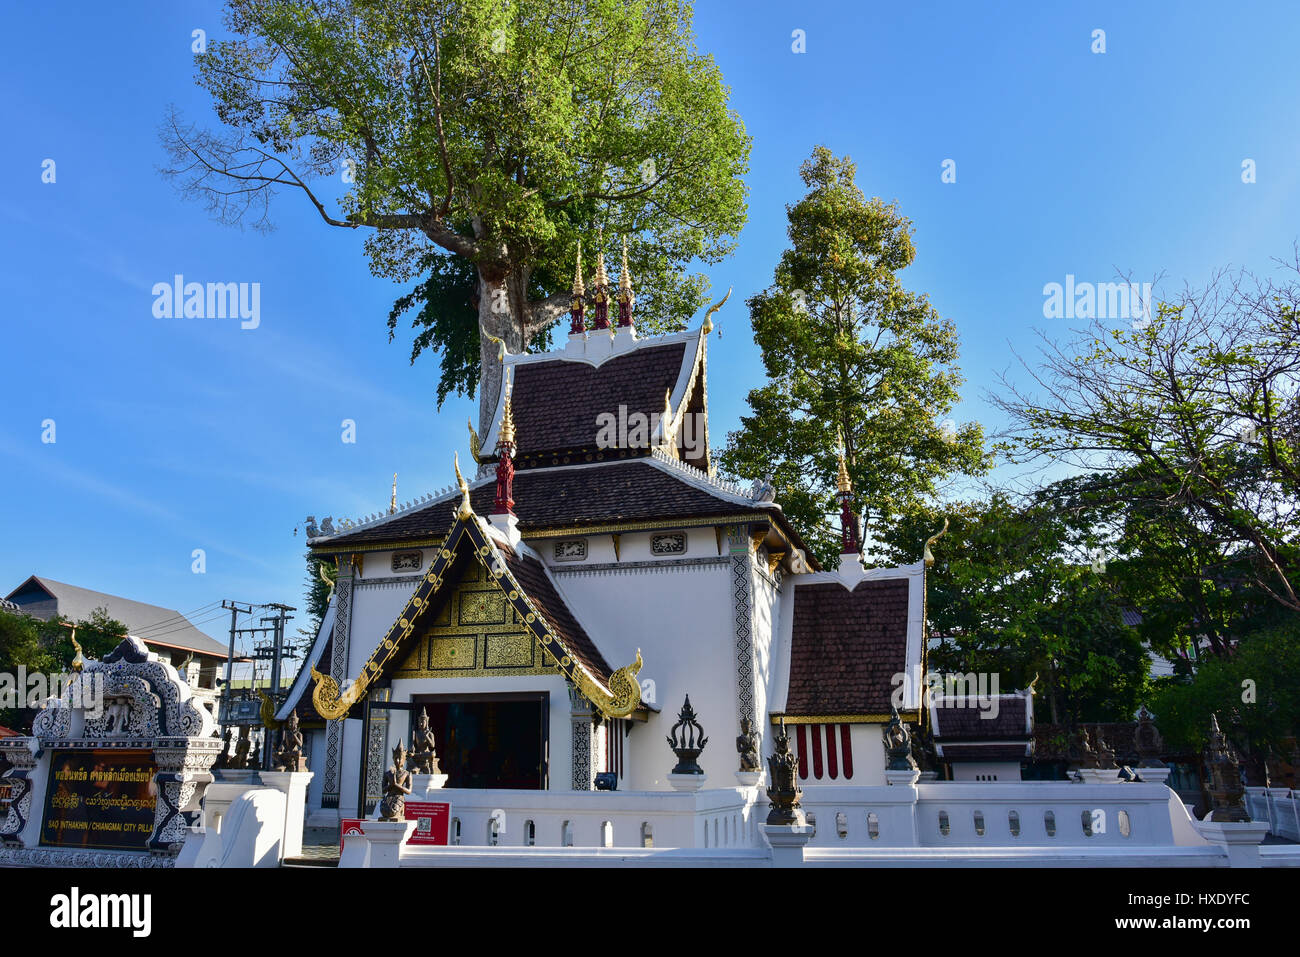 Le temple de Sao Inthakin avec arbre arbres diptérocarpacées (yang) en arrière-plan, Chiang Mai - Thaïlande Banque D'Images